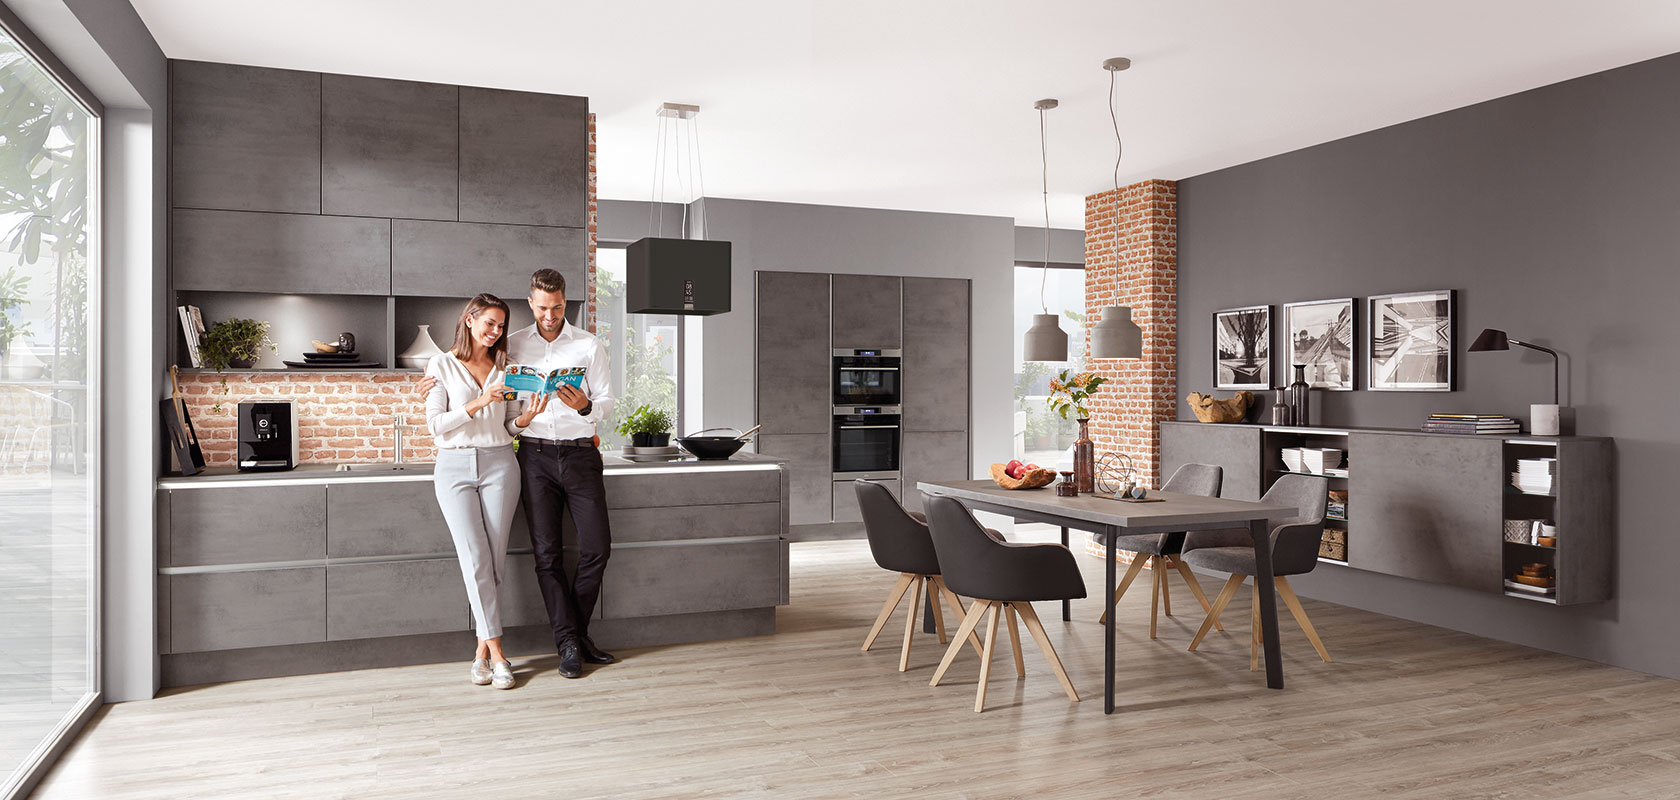 Una cocina elegante y moderna con una pareja disfrutando de café, con gabinetes grises elegantes, ladrillo expuesto y un amplio comedor con decoración contemporánea.